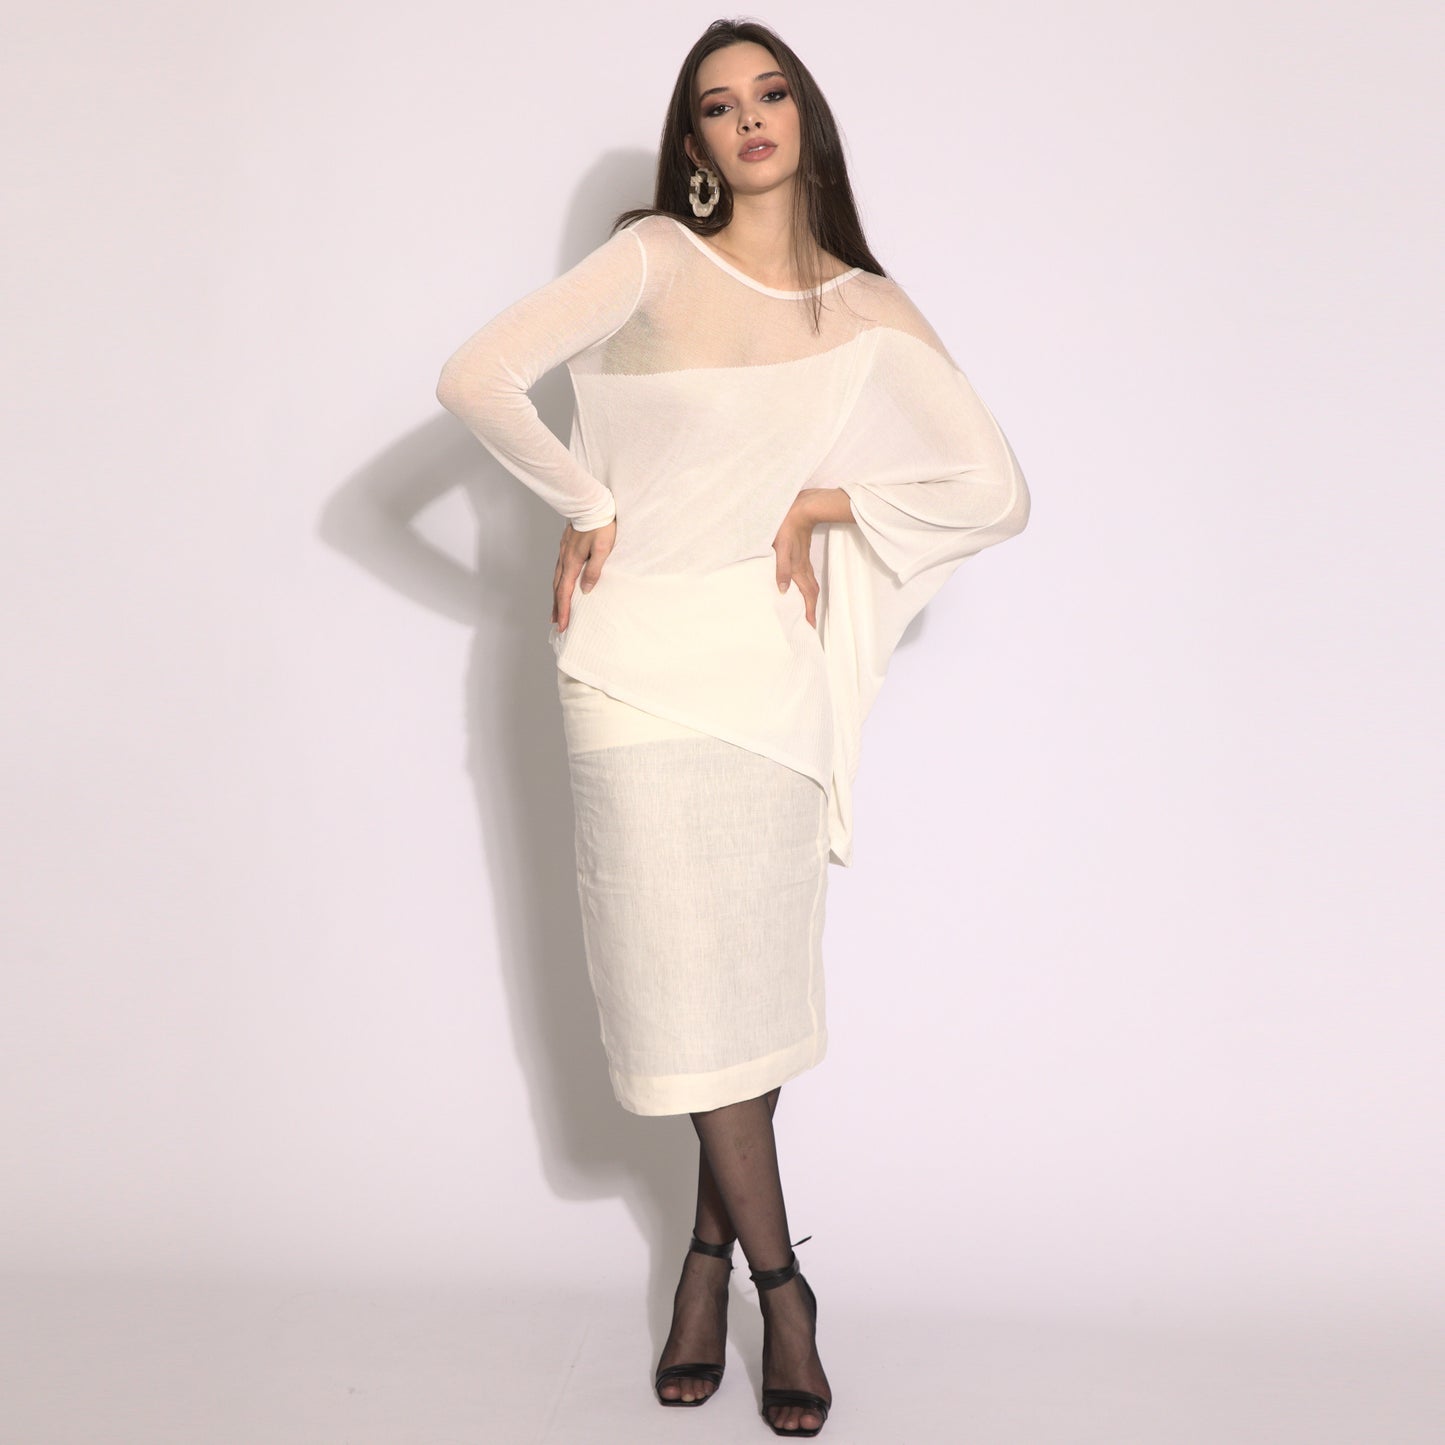 Kaya - Blusa de tricot assimétrica na cor off-white com transparencia